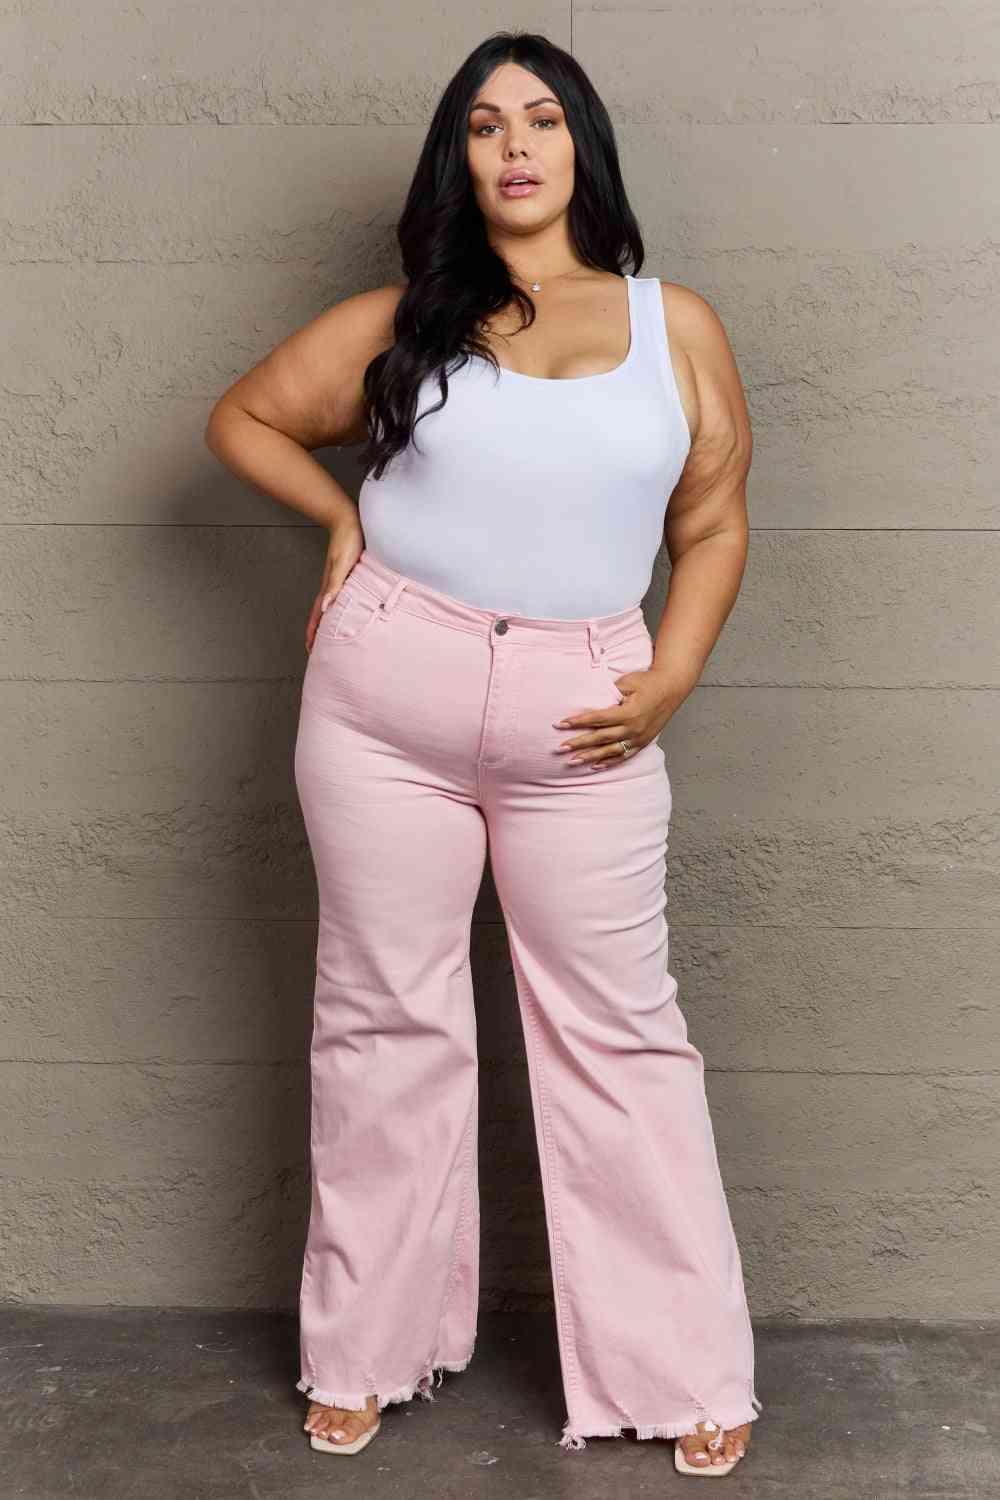 Bona Fide Fashion - Full Size High Waist Wide Leg Jeans in Light Pink - Women Fashion - Bona Fide Fashion